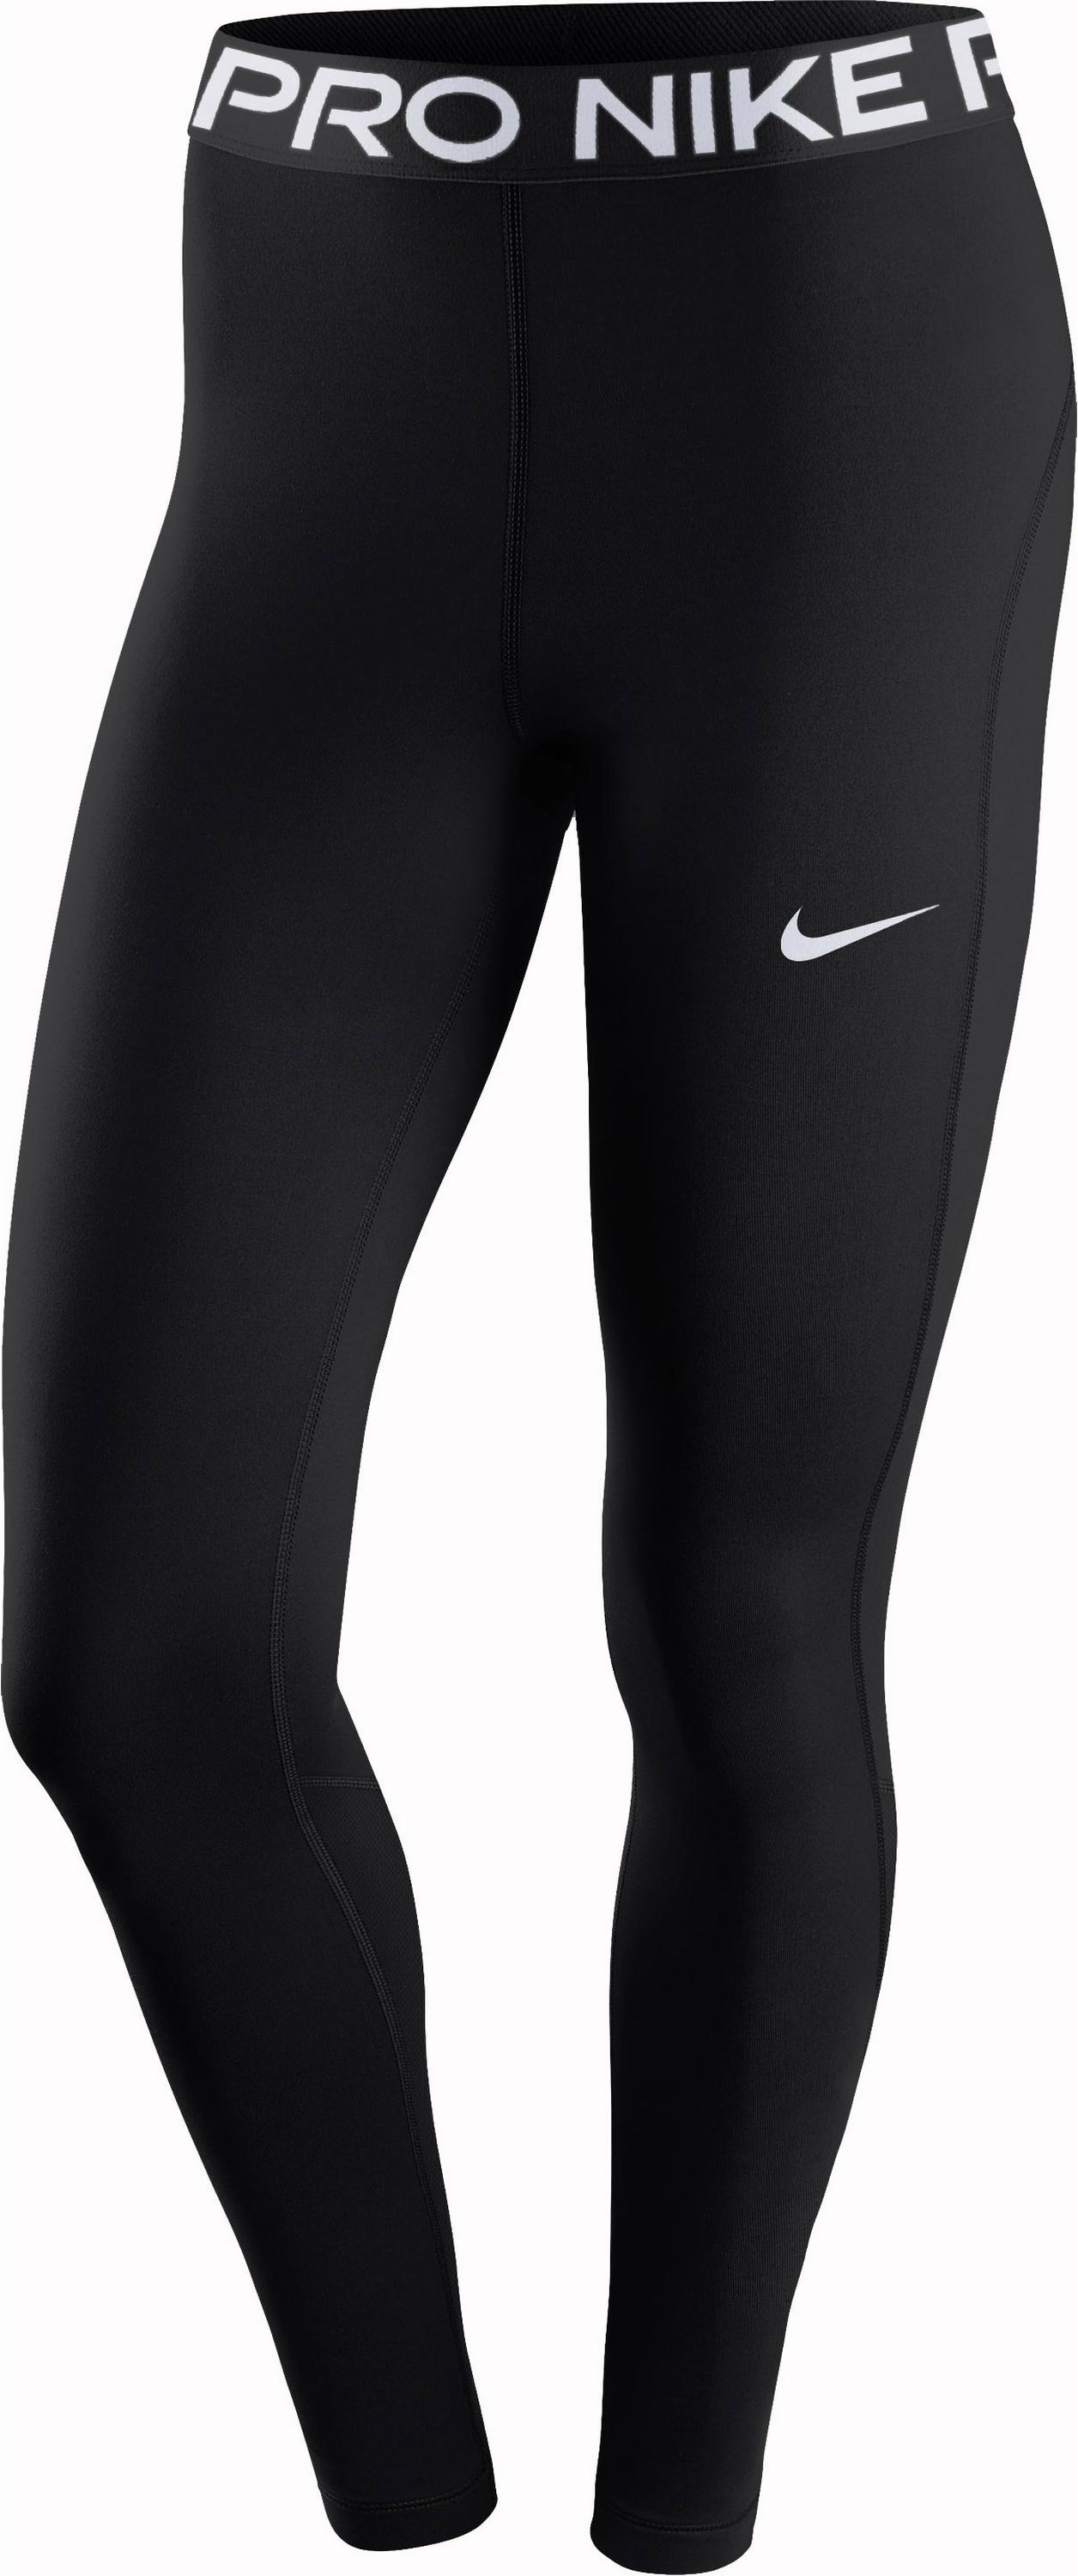 Nike PRO 365 Tights Damen in black-white, Größe S - schwarz